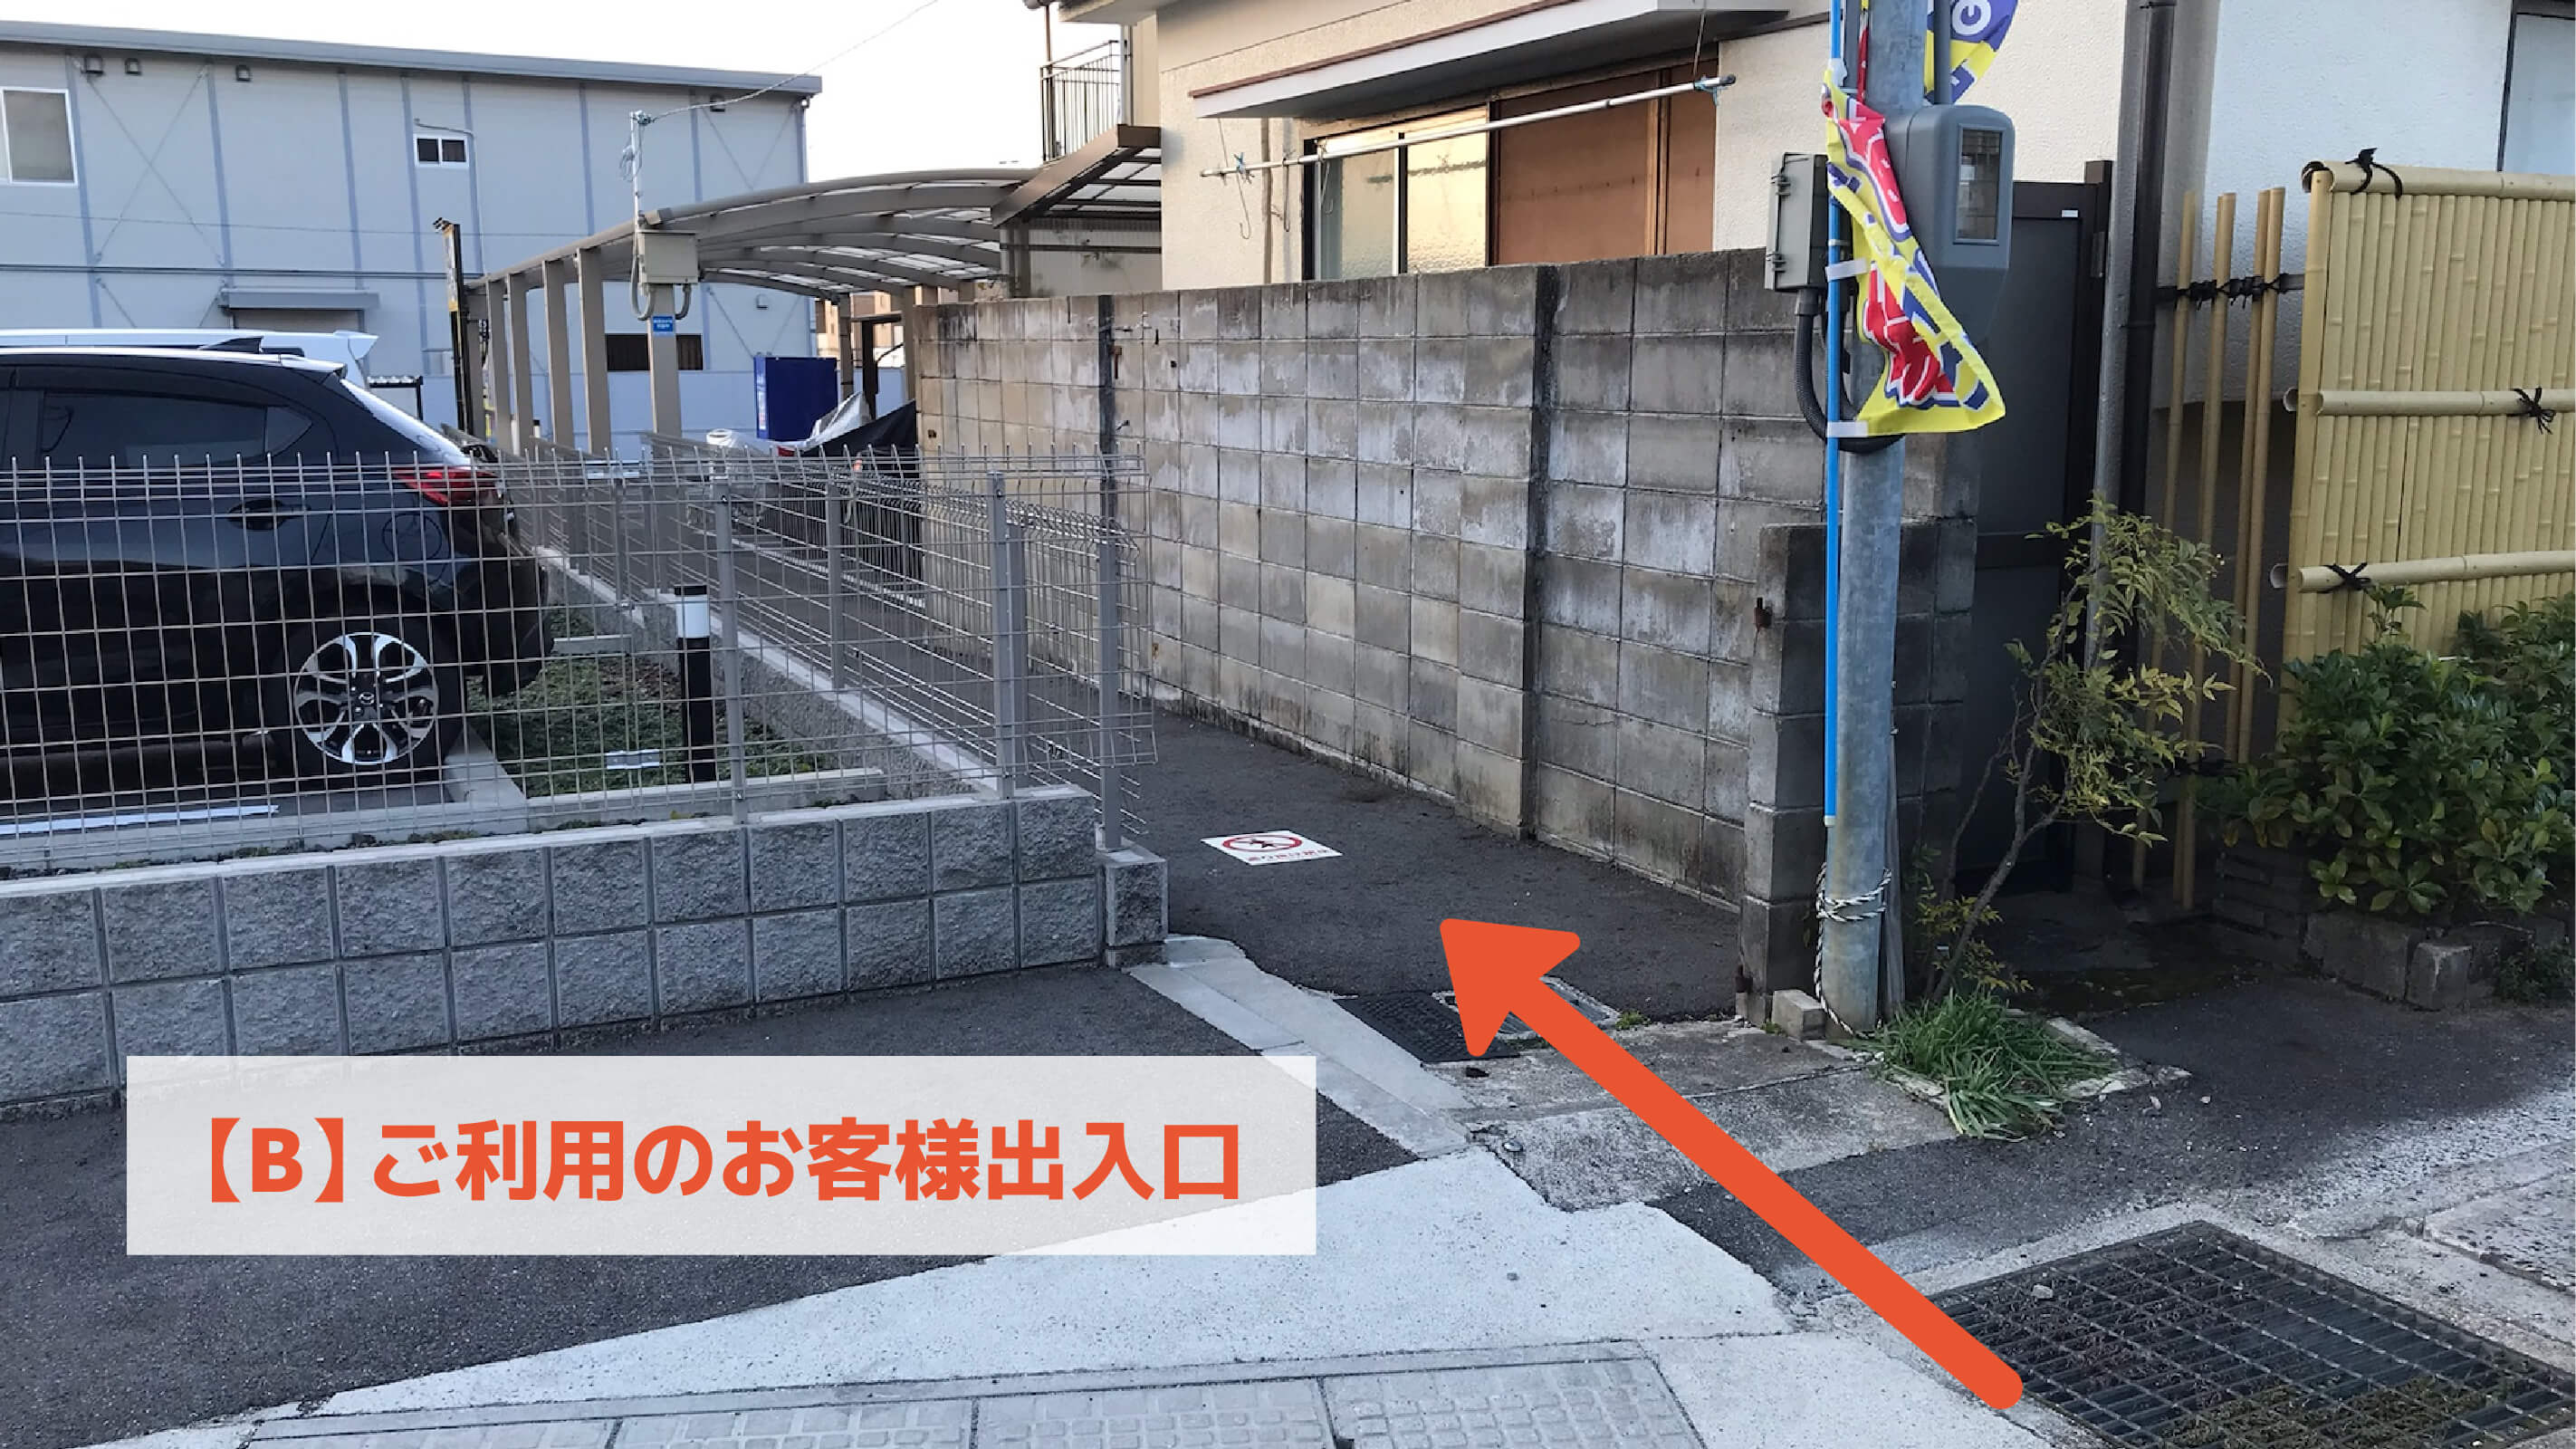 JR新田駅東口バイク駐輪場の写真